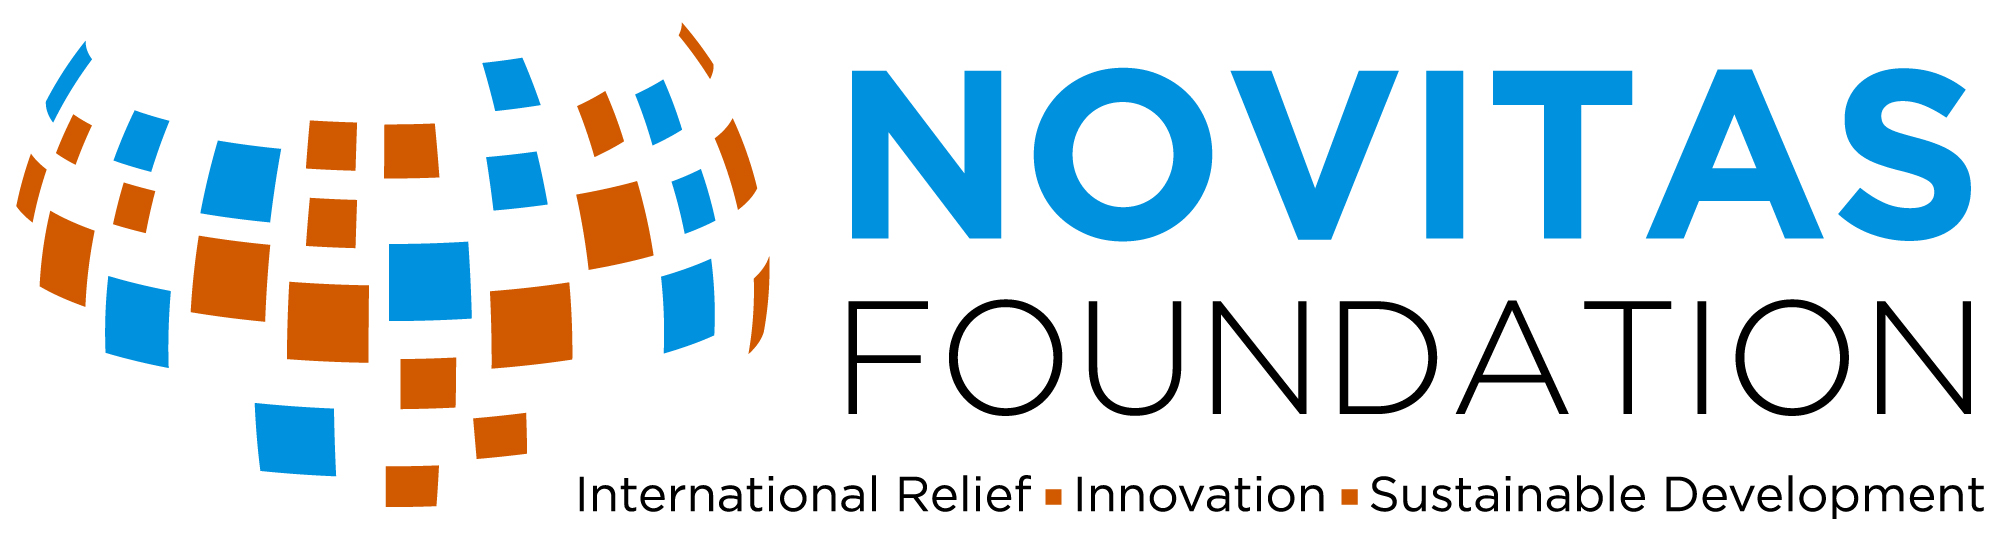 Novitas Foundation logo